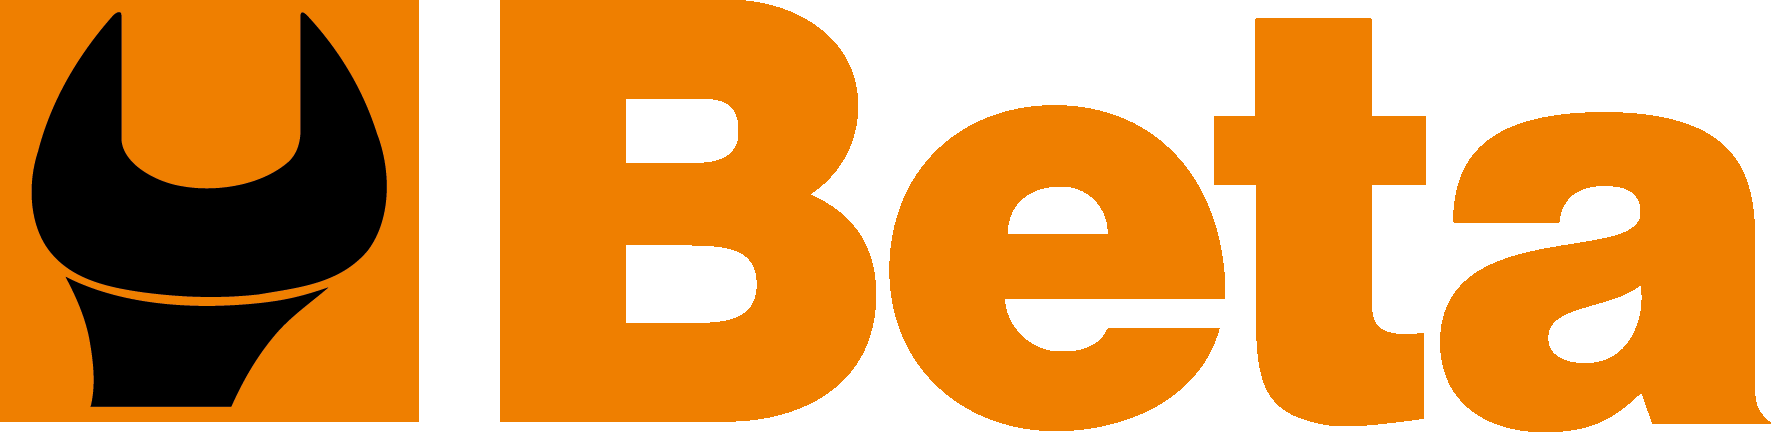 beta-logo